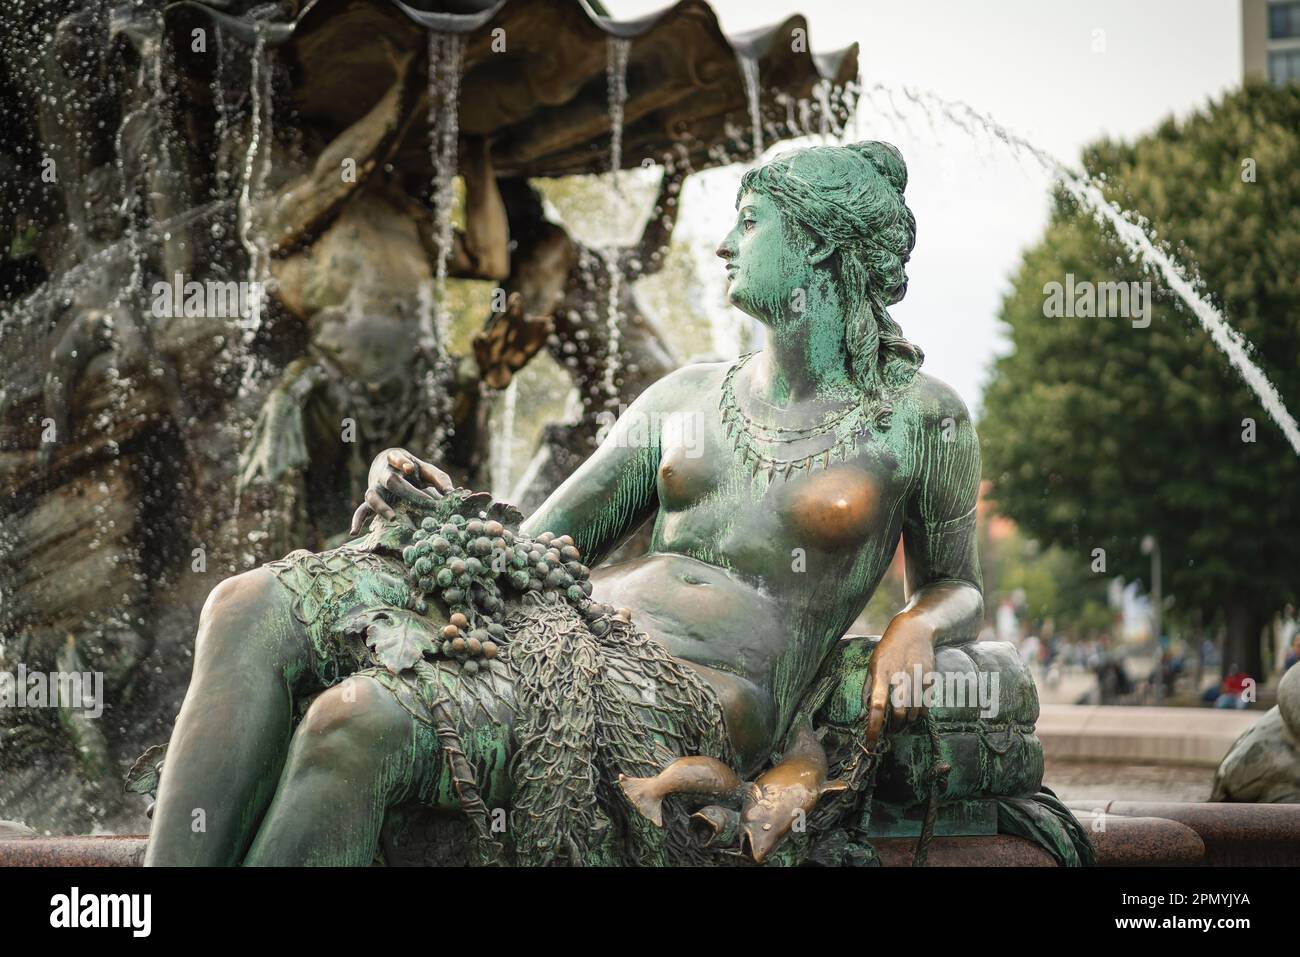 Rhein Skulpturendetail am Neptunbrunnen (1891 von Reinhold Begas entworfener Brunnen) - Berlin, Deutschland Stockfoto